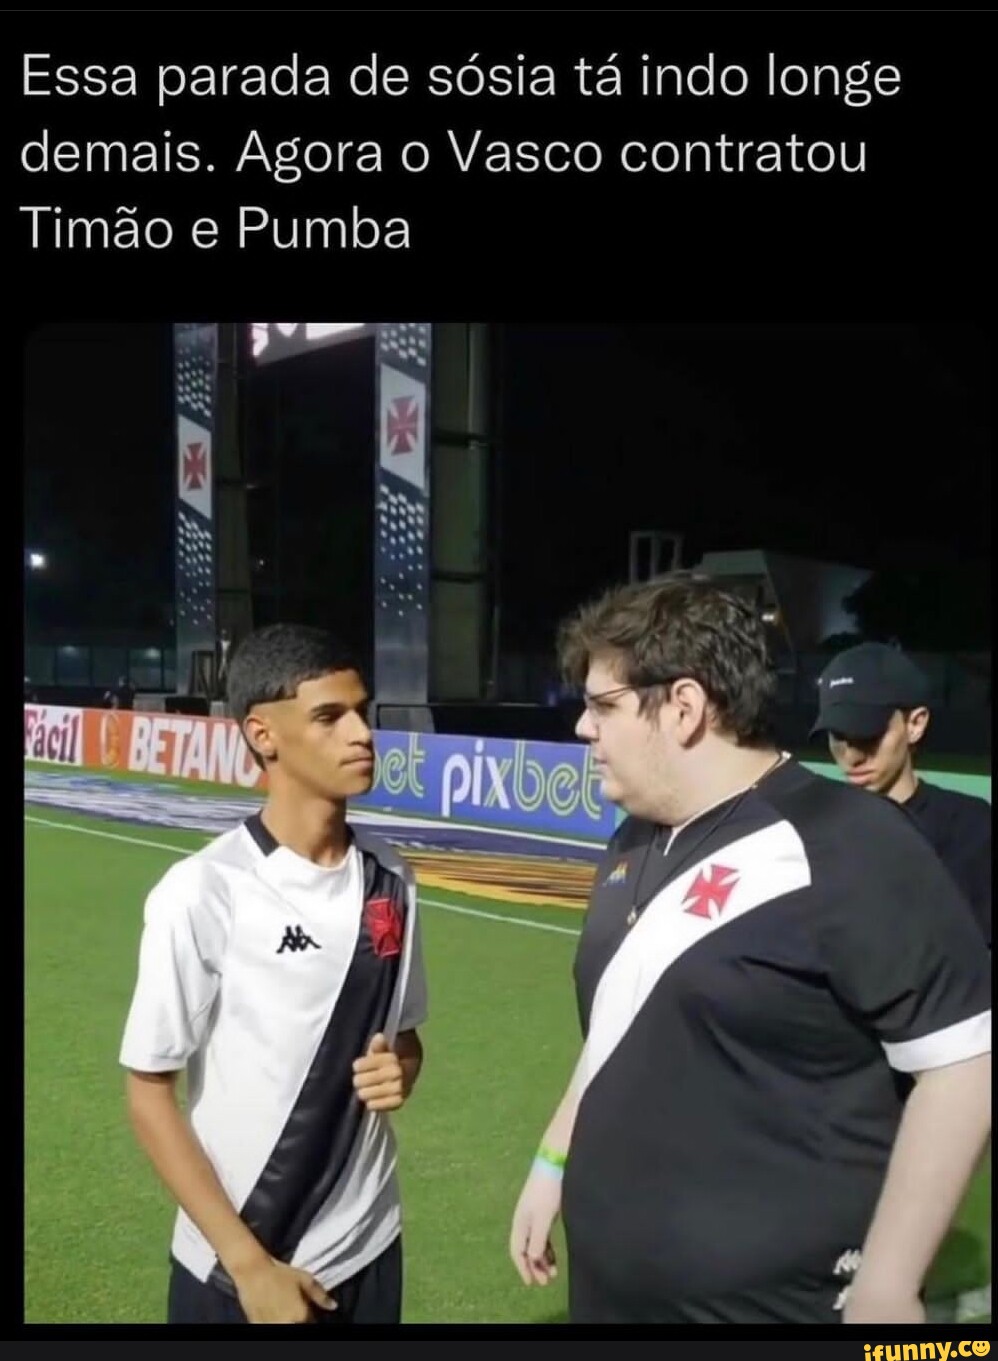 Descubra qual Titã você seria: 2-Dias e ho em Messi Vascaíno Careca -  iFunny Brazil